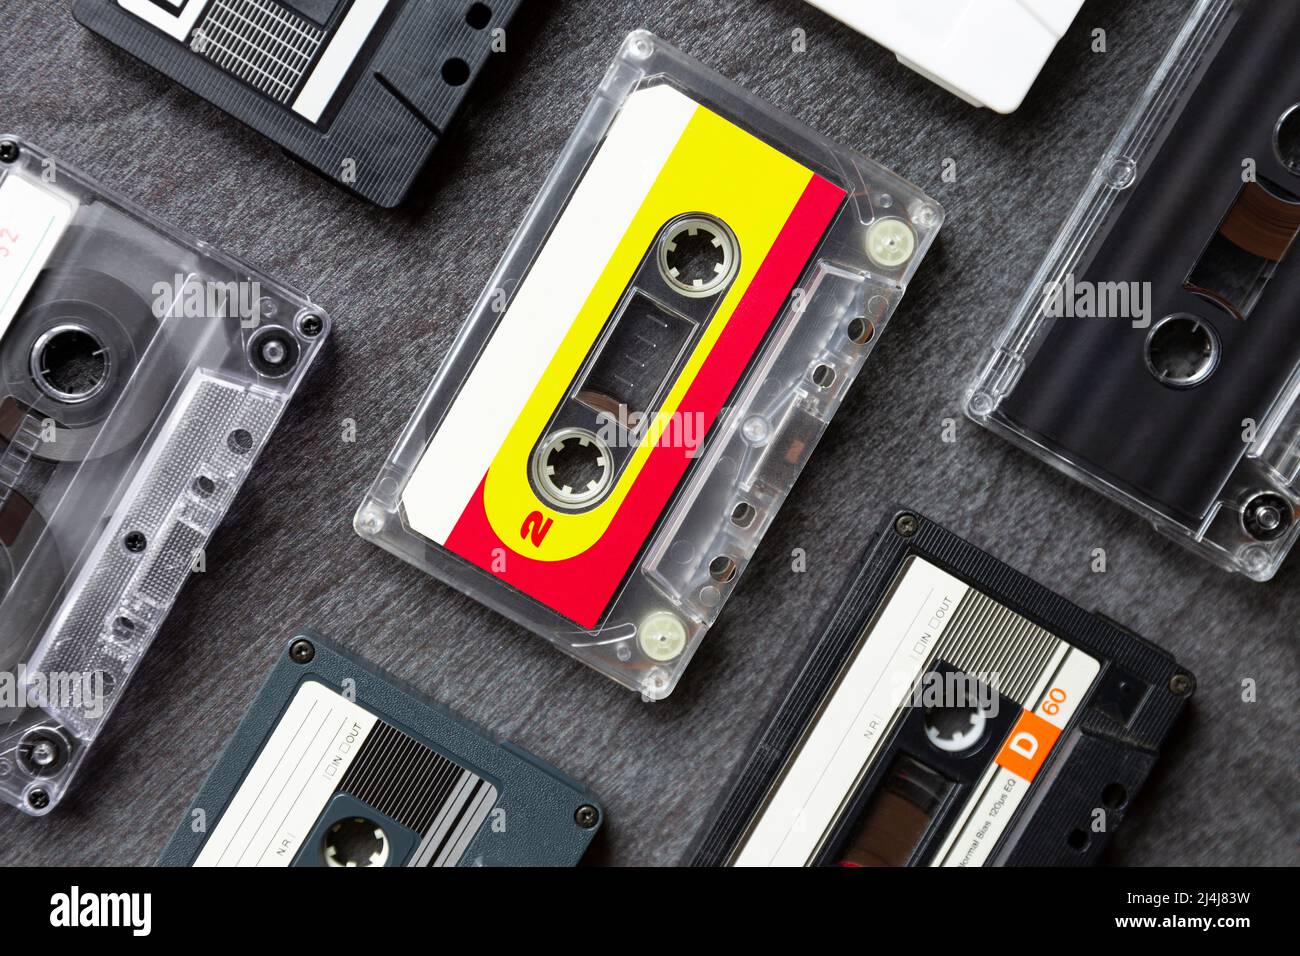 Draufsicht auf verschiedene alte Kassettenbänder auf dunkelgrauem Hintergrund. Musikikone der 80s und 90s. Nahaufnahme. Stockfoto